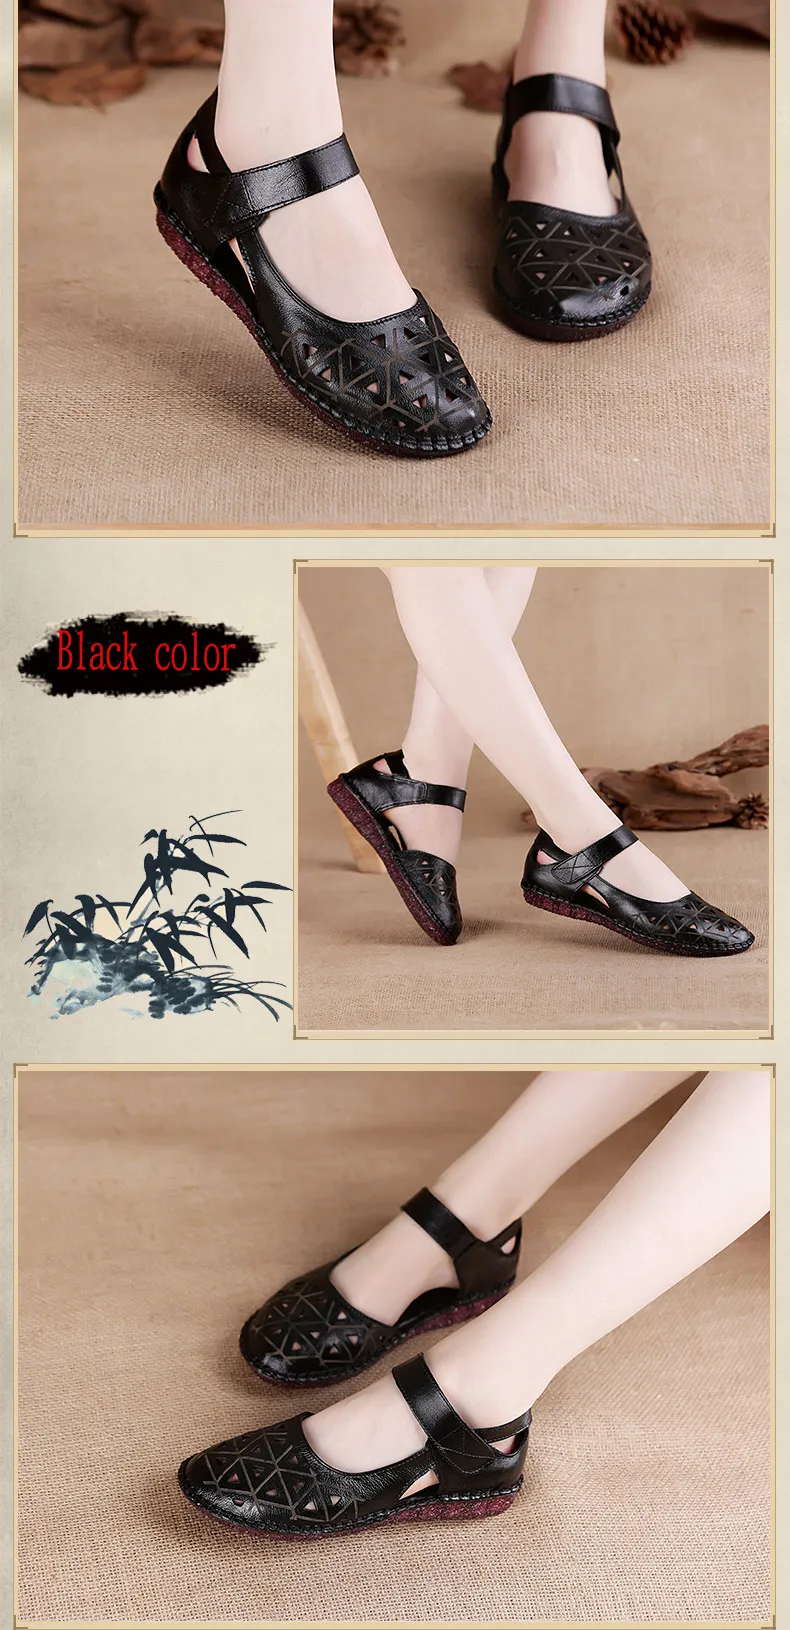 Xiuteng/женские сандалии из натуральной кожи; дышащие сандалии с отверстиями; износостойкие Летние вьетнамки; шлепанцы; обувь на плоской подошве